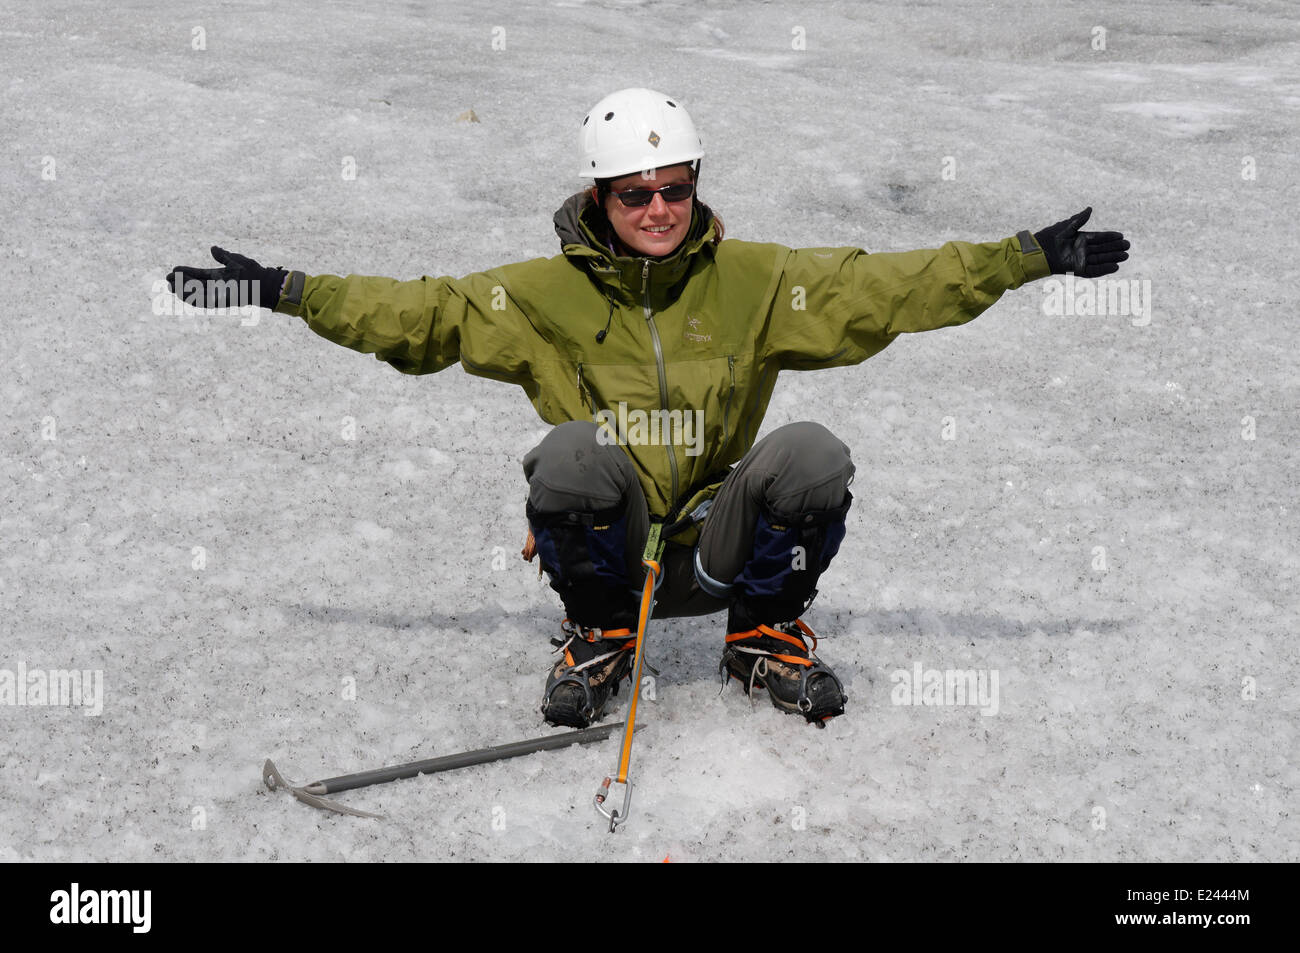 Une dame climber repose sur une broche à glace glacier dans une séance de formation à une école d'escalade Banque D'Images